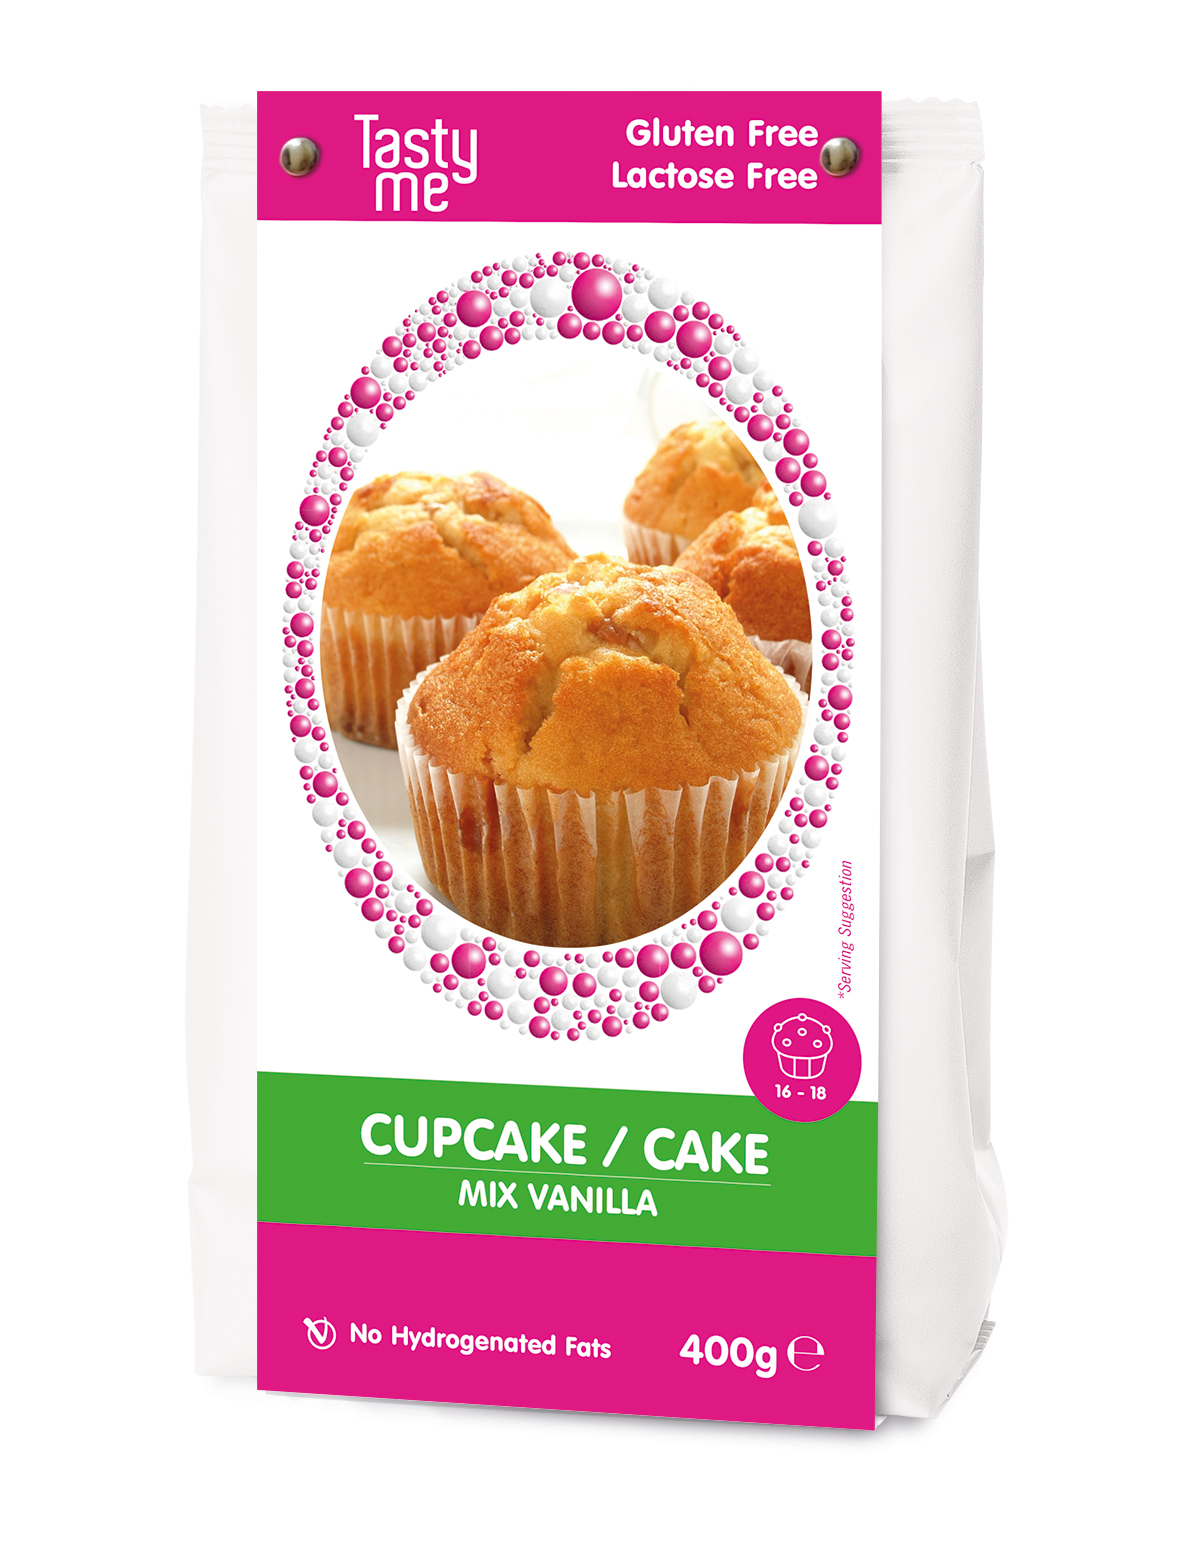 Cupcake/cake mix 400g - gluten-free